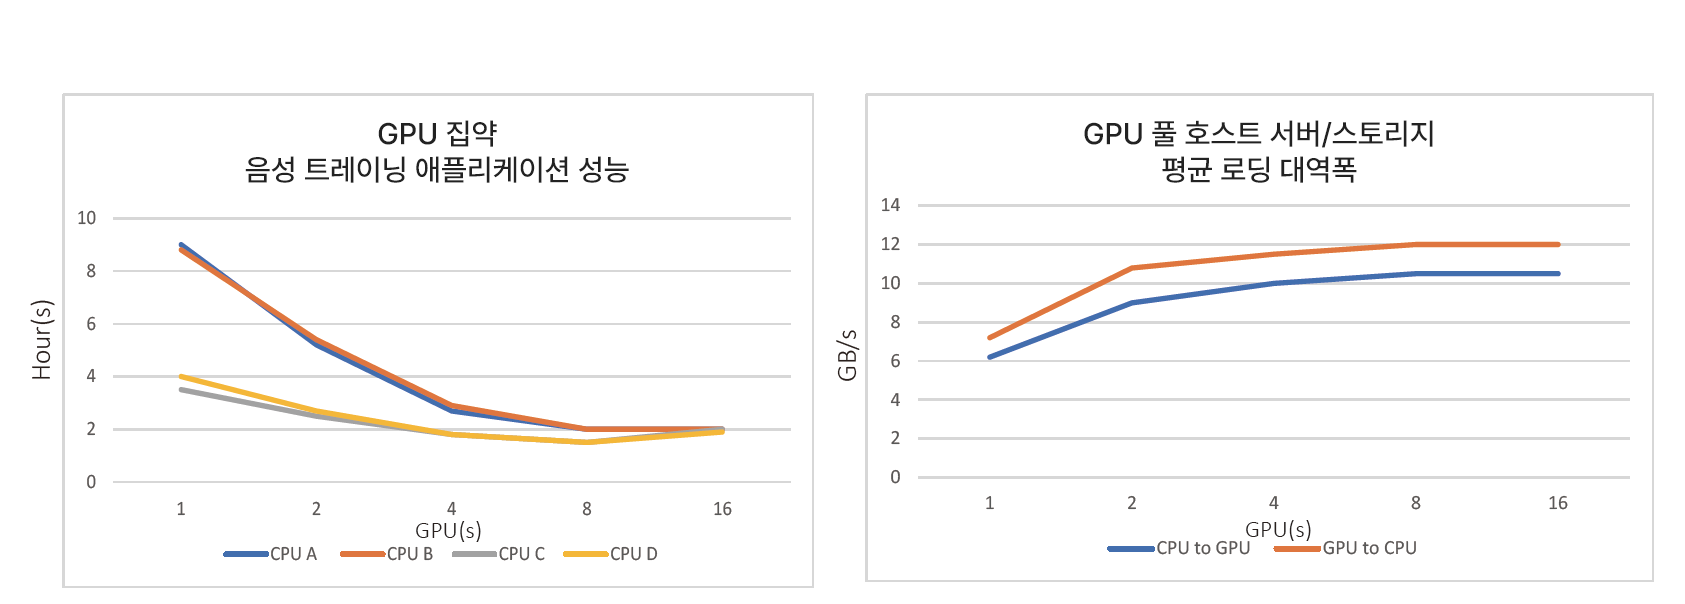 기존 시스템에서 측정된 GPU 성능 및 대역폭 병목 현상